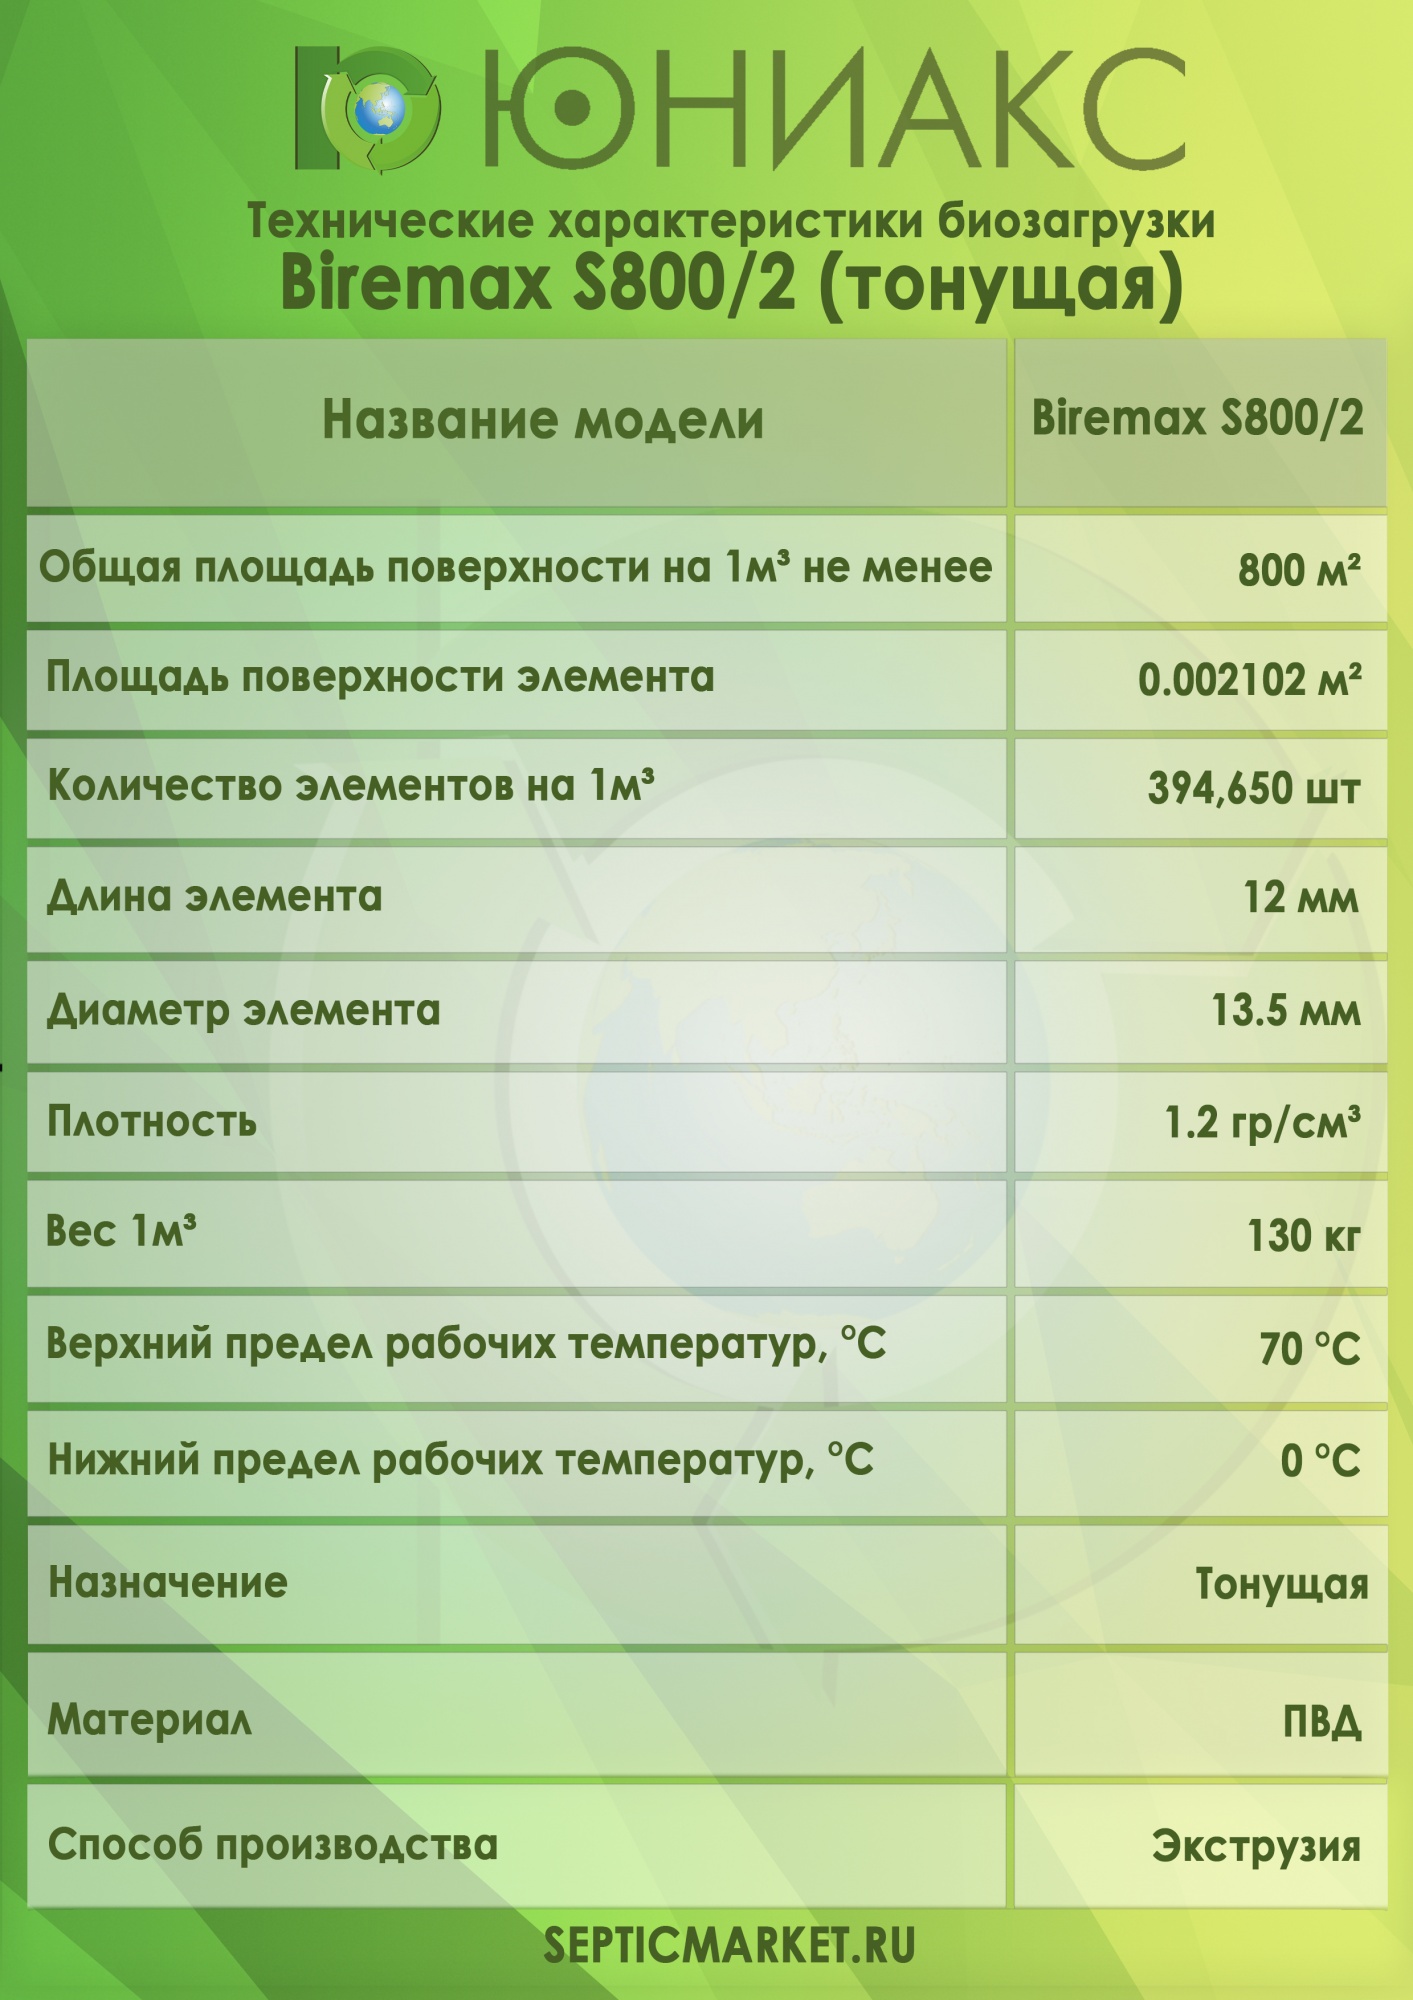 Тонущая биозагрузка Биремакс Эксперт S800/2 (20 литров)